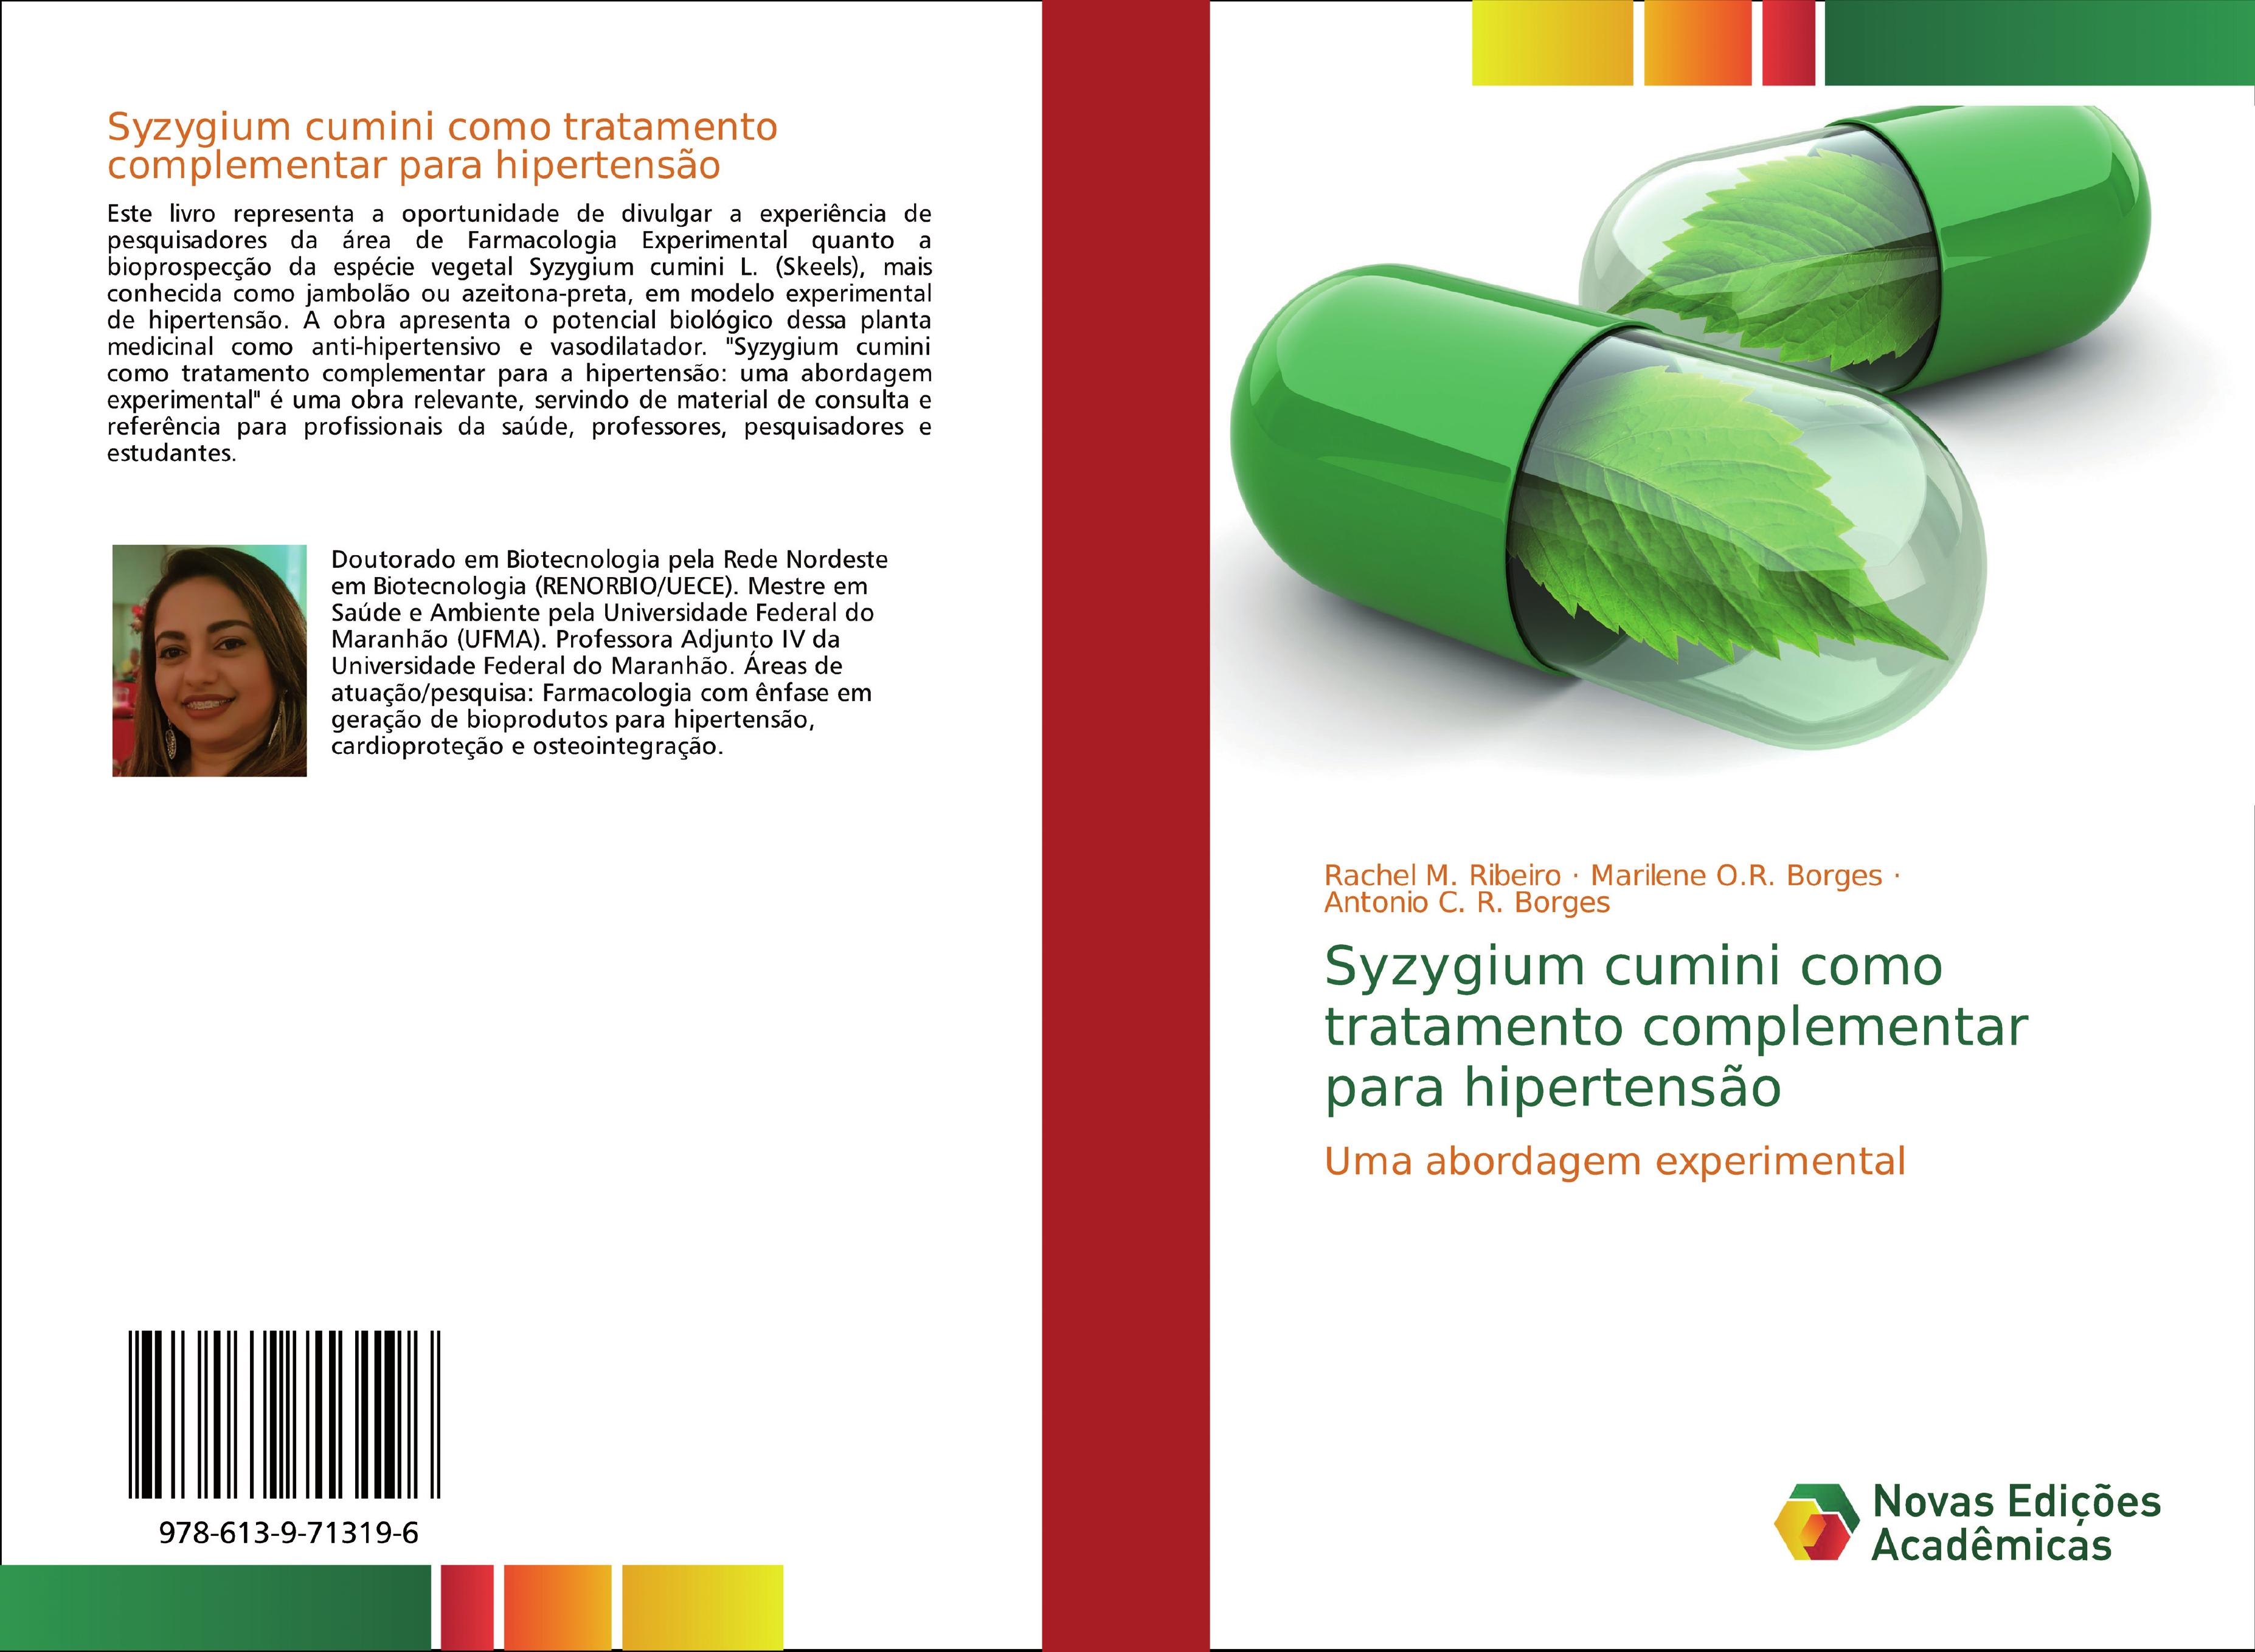 Syzygium cumini como tratamento complementar para hipertensÃ£o - Rachel M. Ribeiro|Marilene O.R. Borges|Antonio C. R. Borges